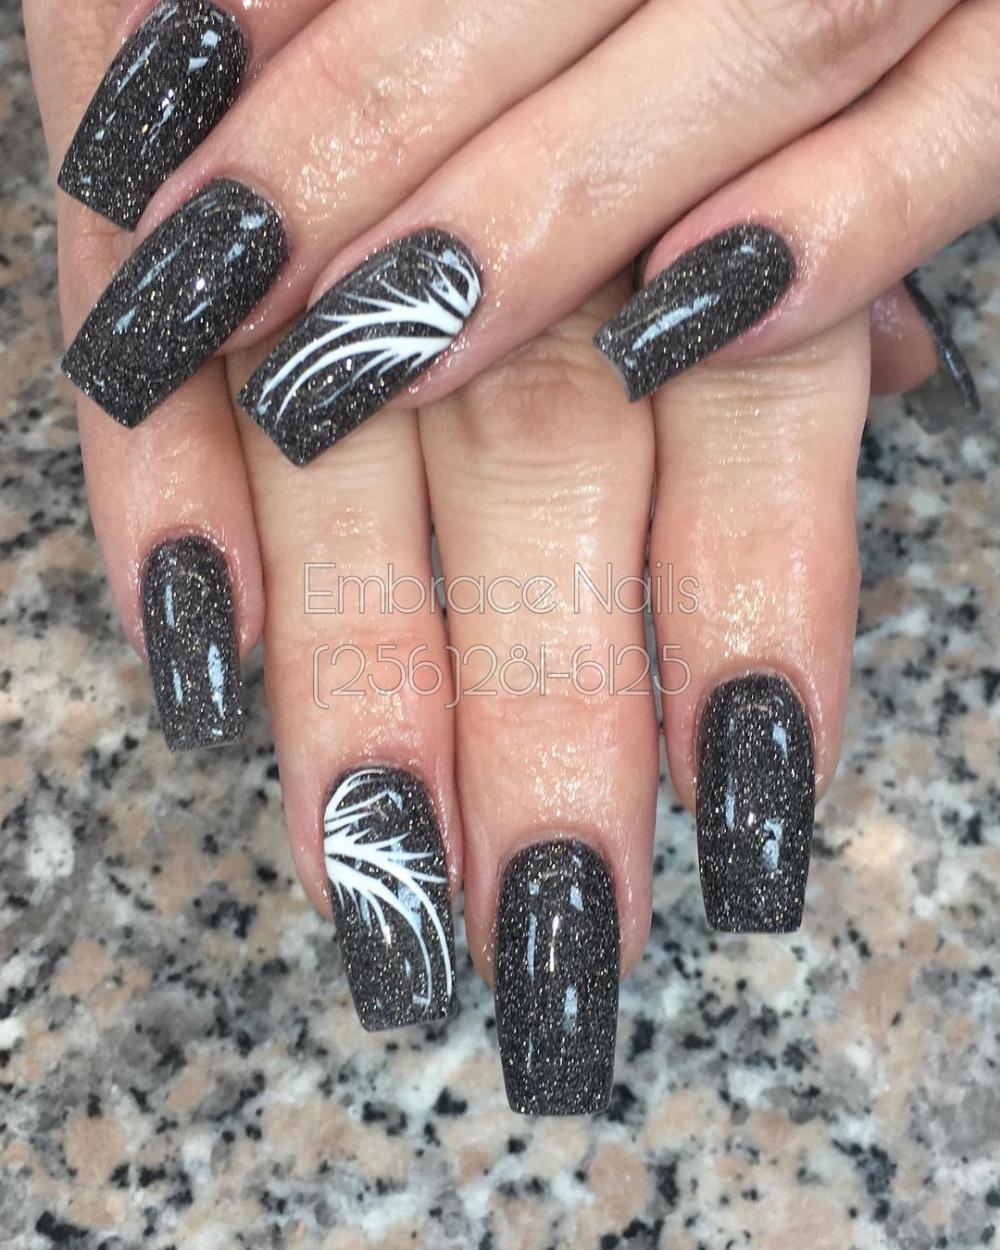 Cute black nails 